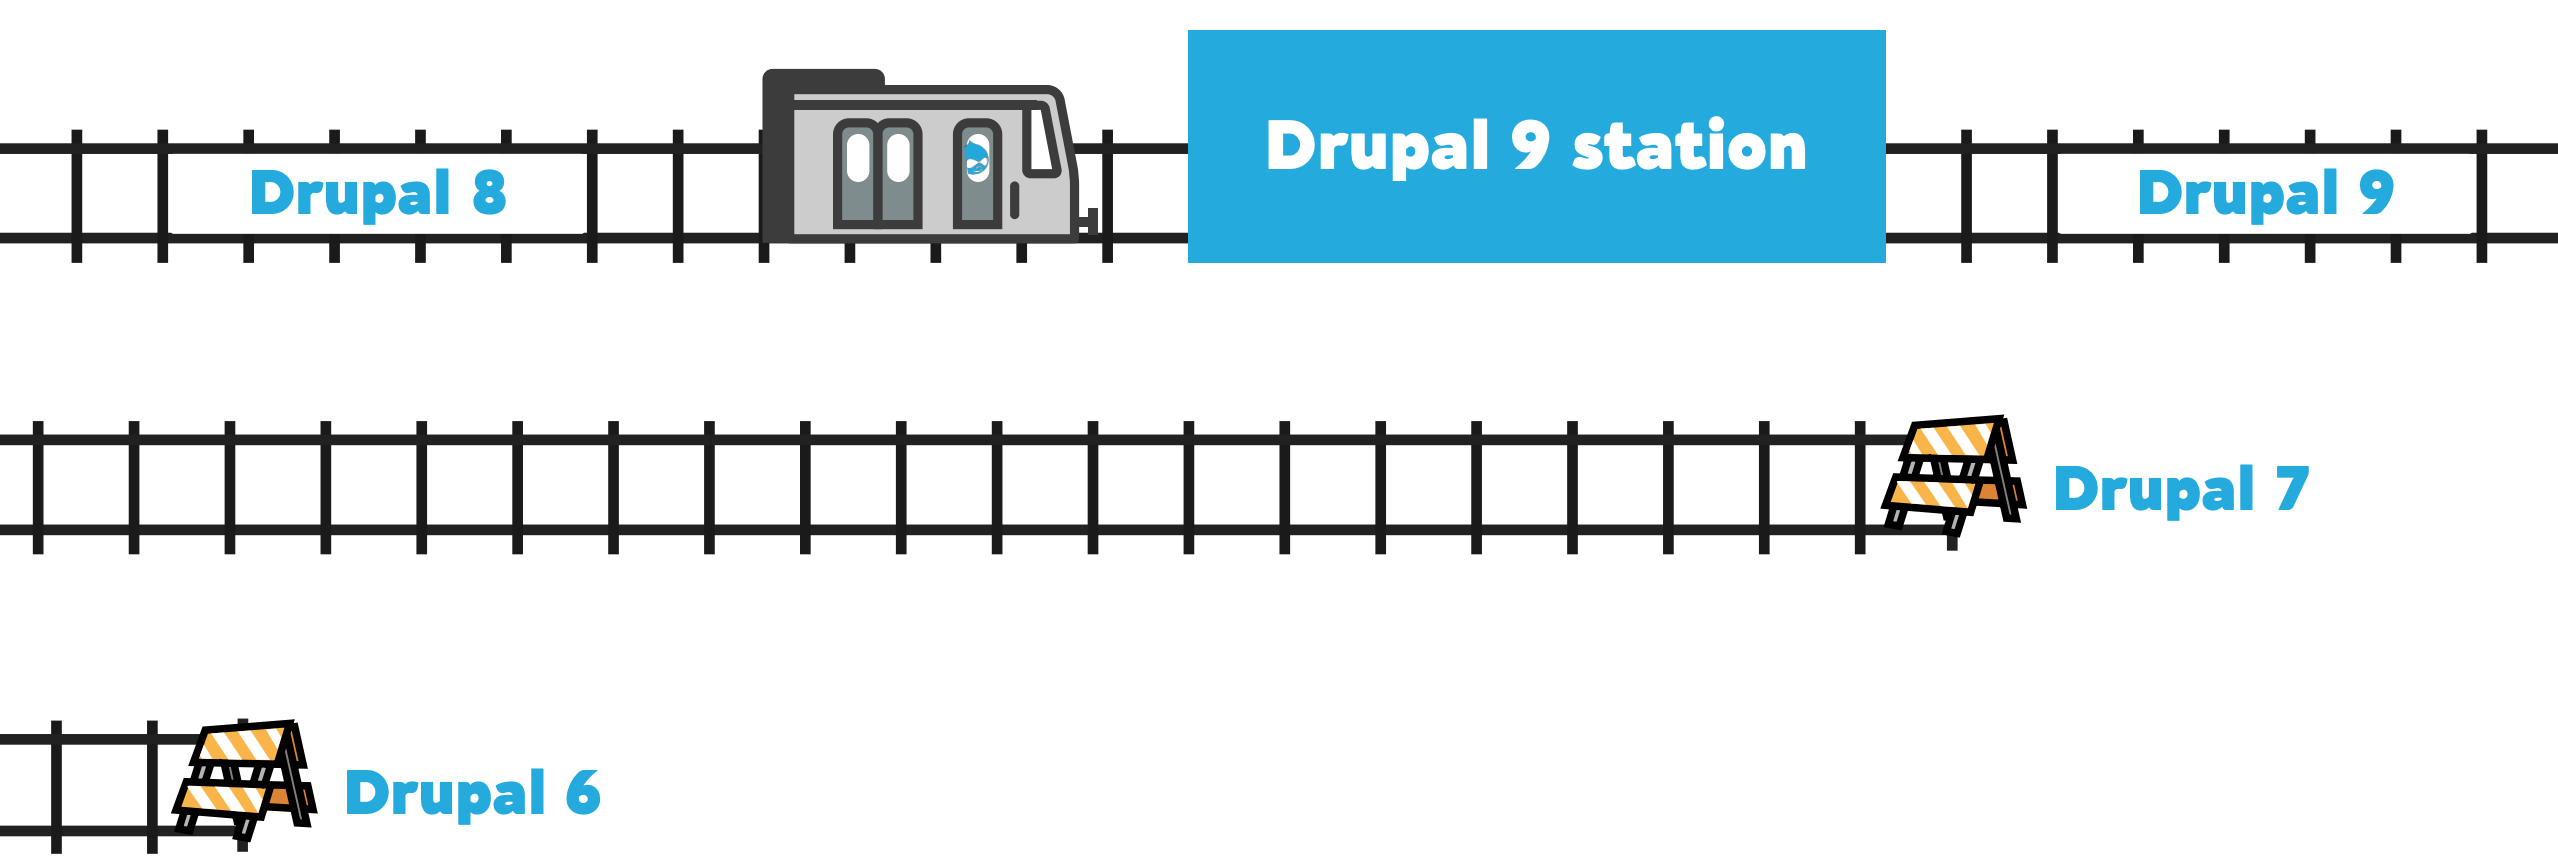 Drupal 8 nie jest stacją końcową, a jedynie przystankiem na drodze rozwoju Drupala